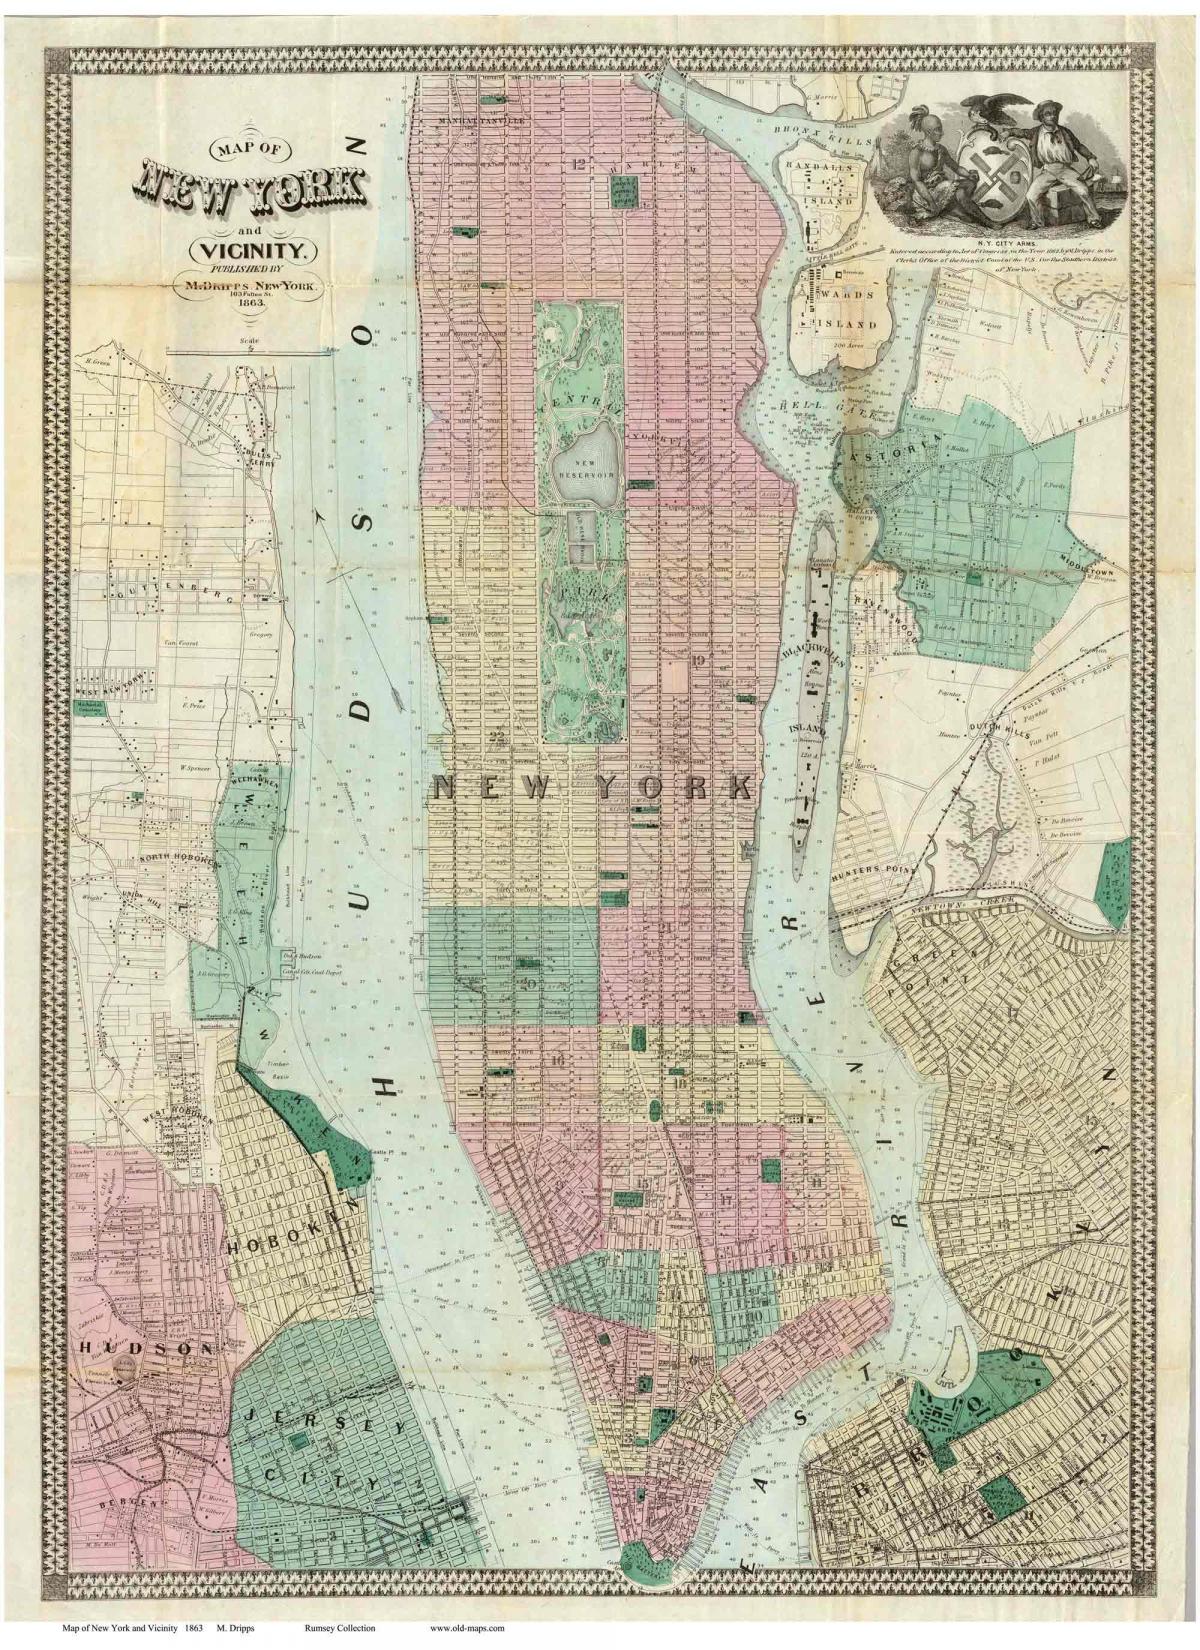 zgodovinski zemljevidi Manhattan